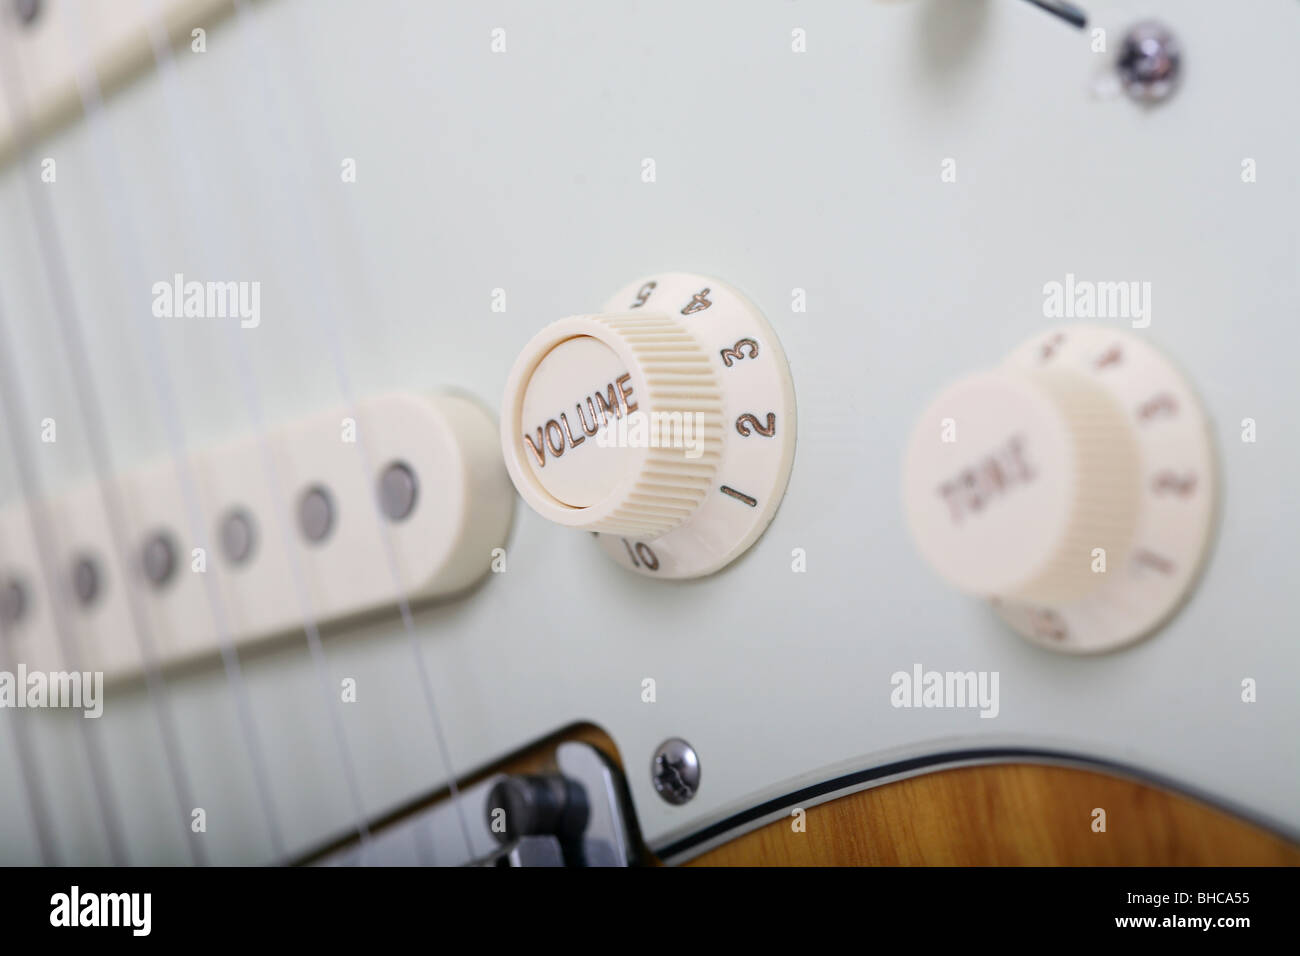 Volume und Tone Regler auf einer Fender Stratocaster-Gitarre  Stockfotografie - Alamy